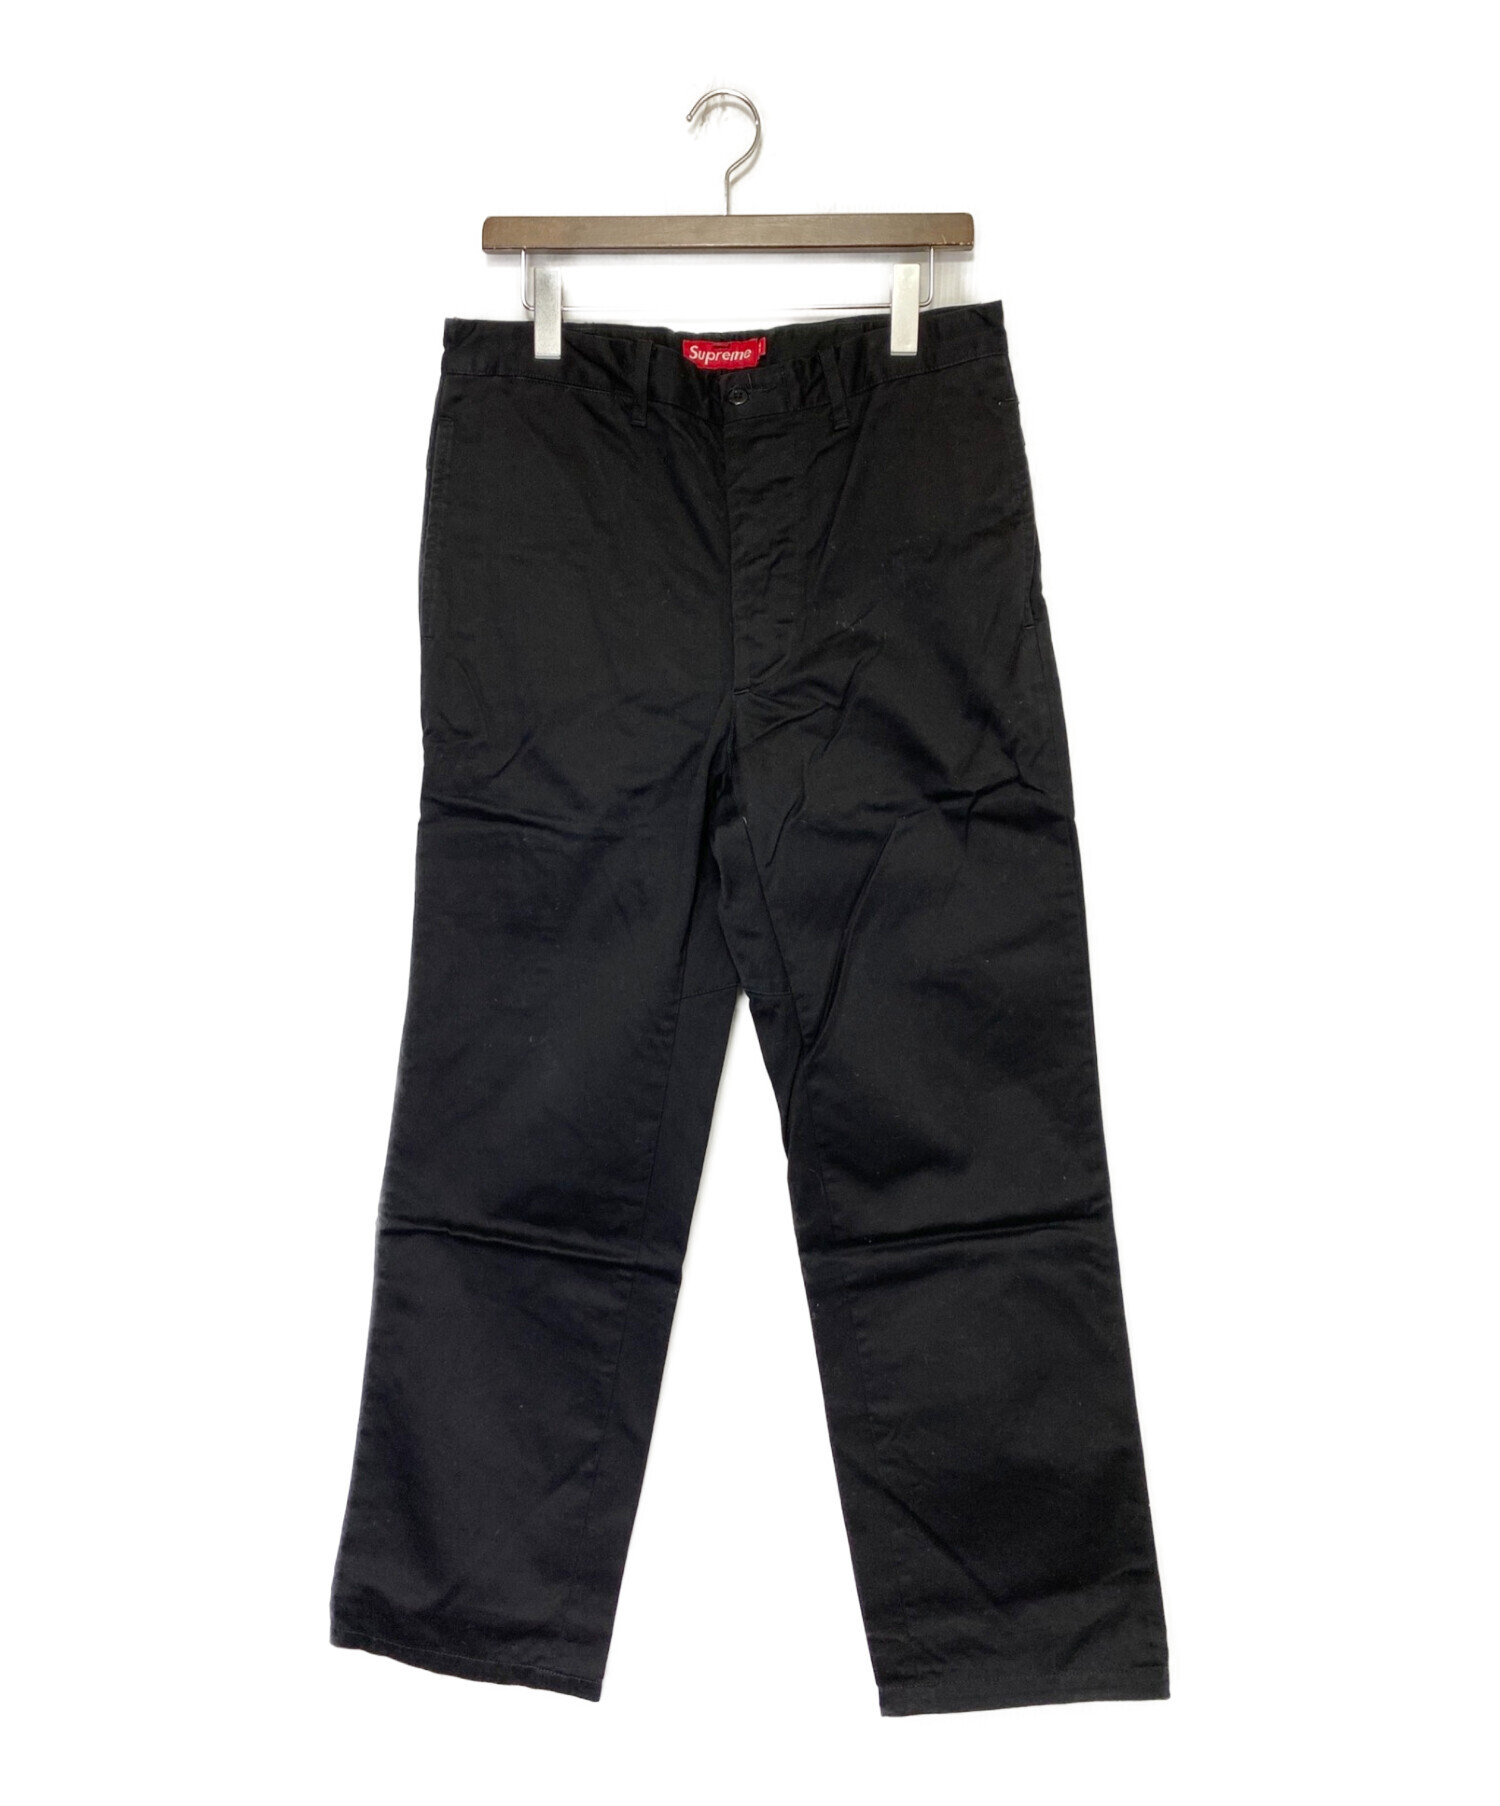 SUPREME (シュプリーム) Chino Pant ブラック サイズ:SIZE 81cm (W32)